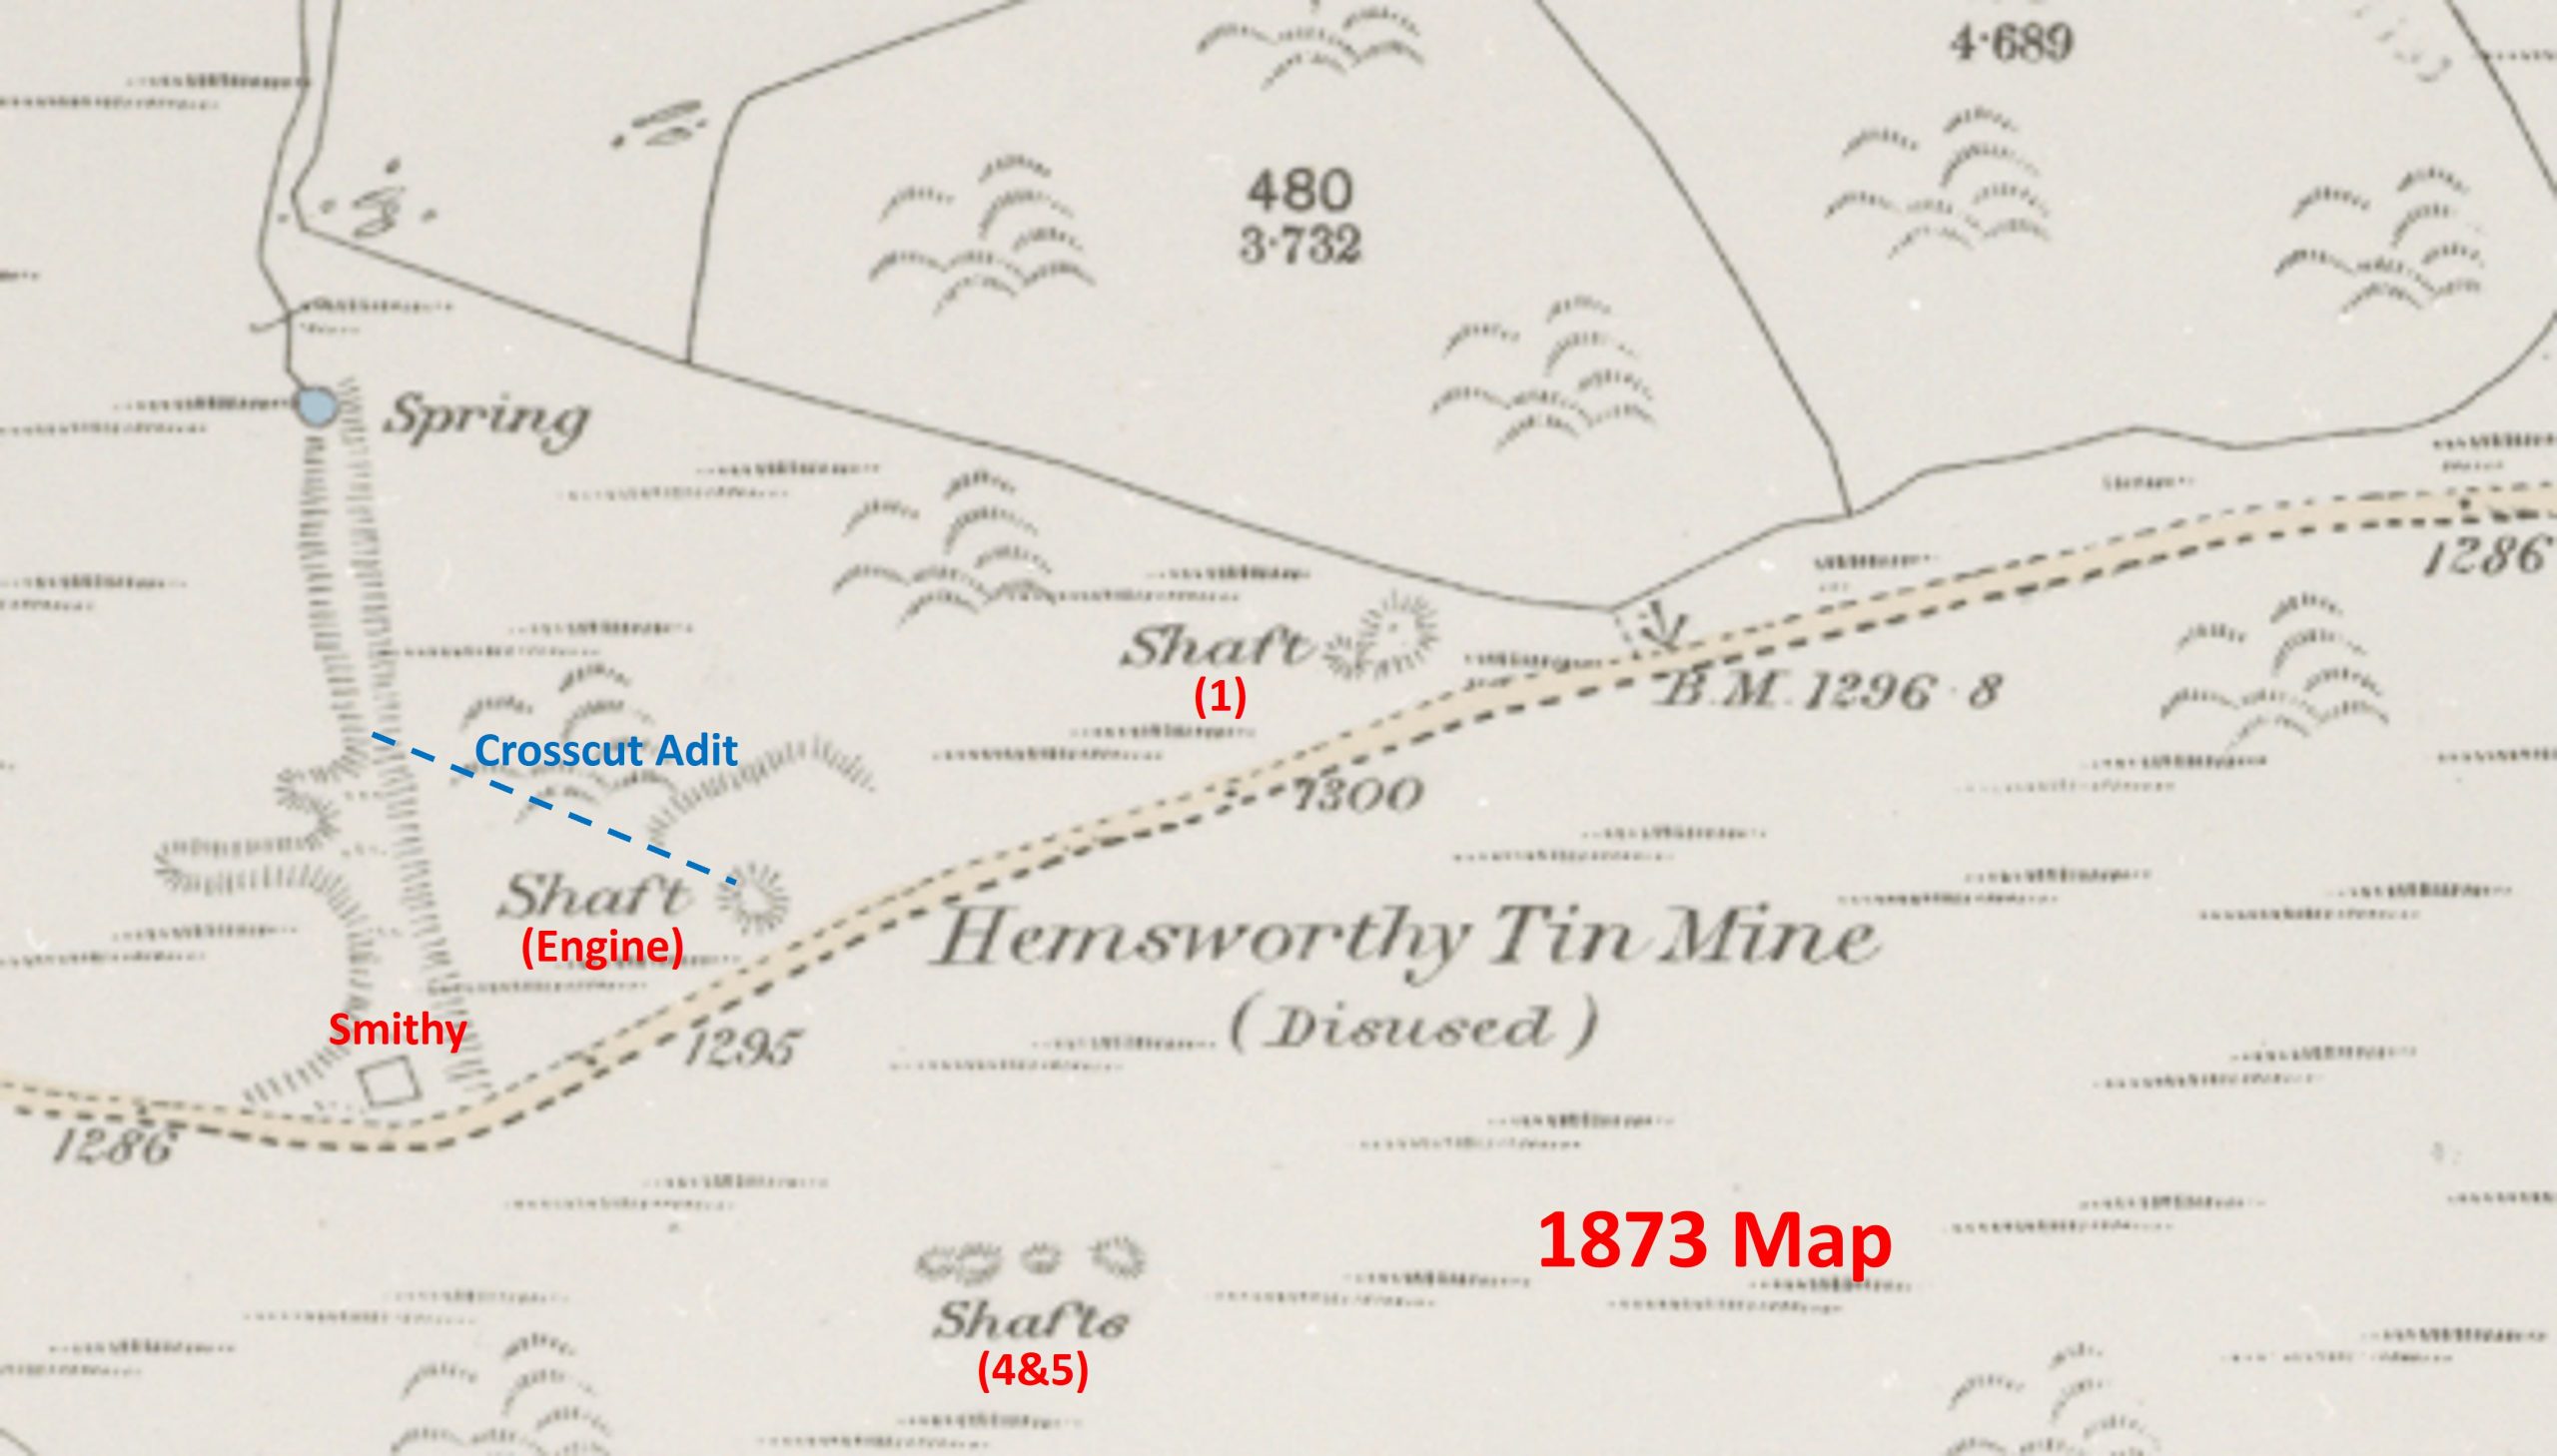 1. Map - 1873